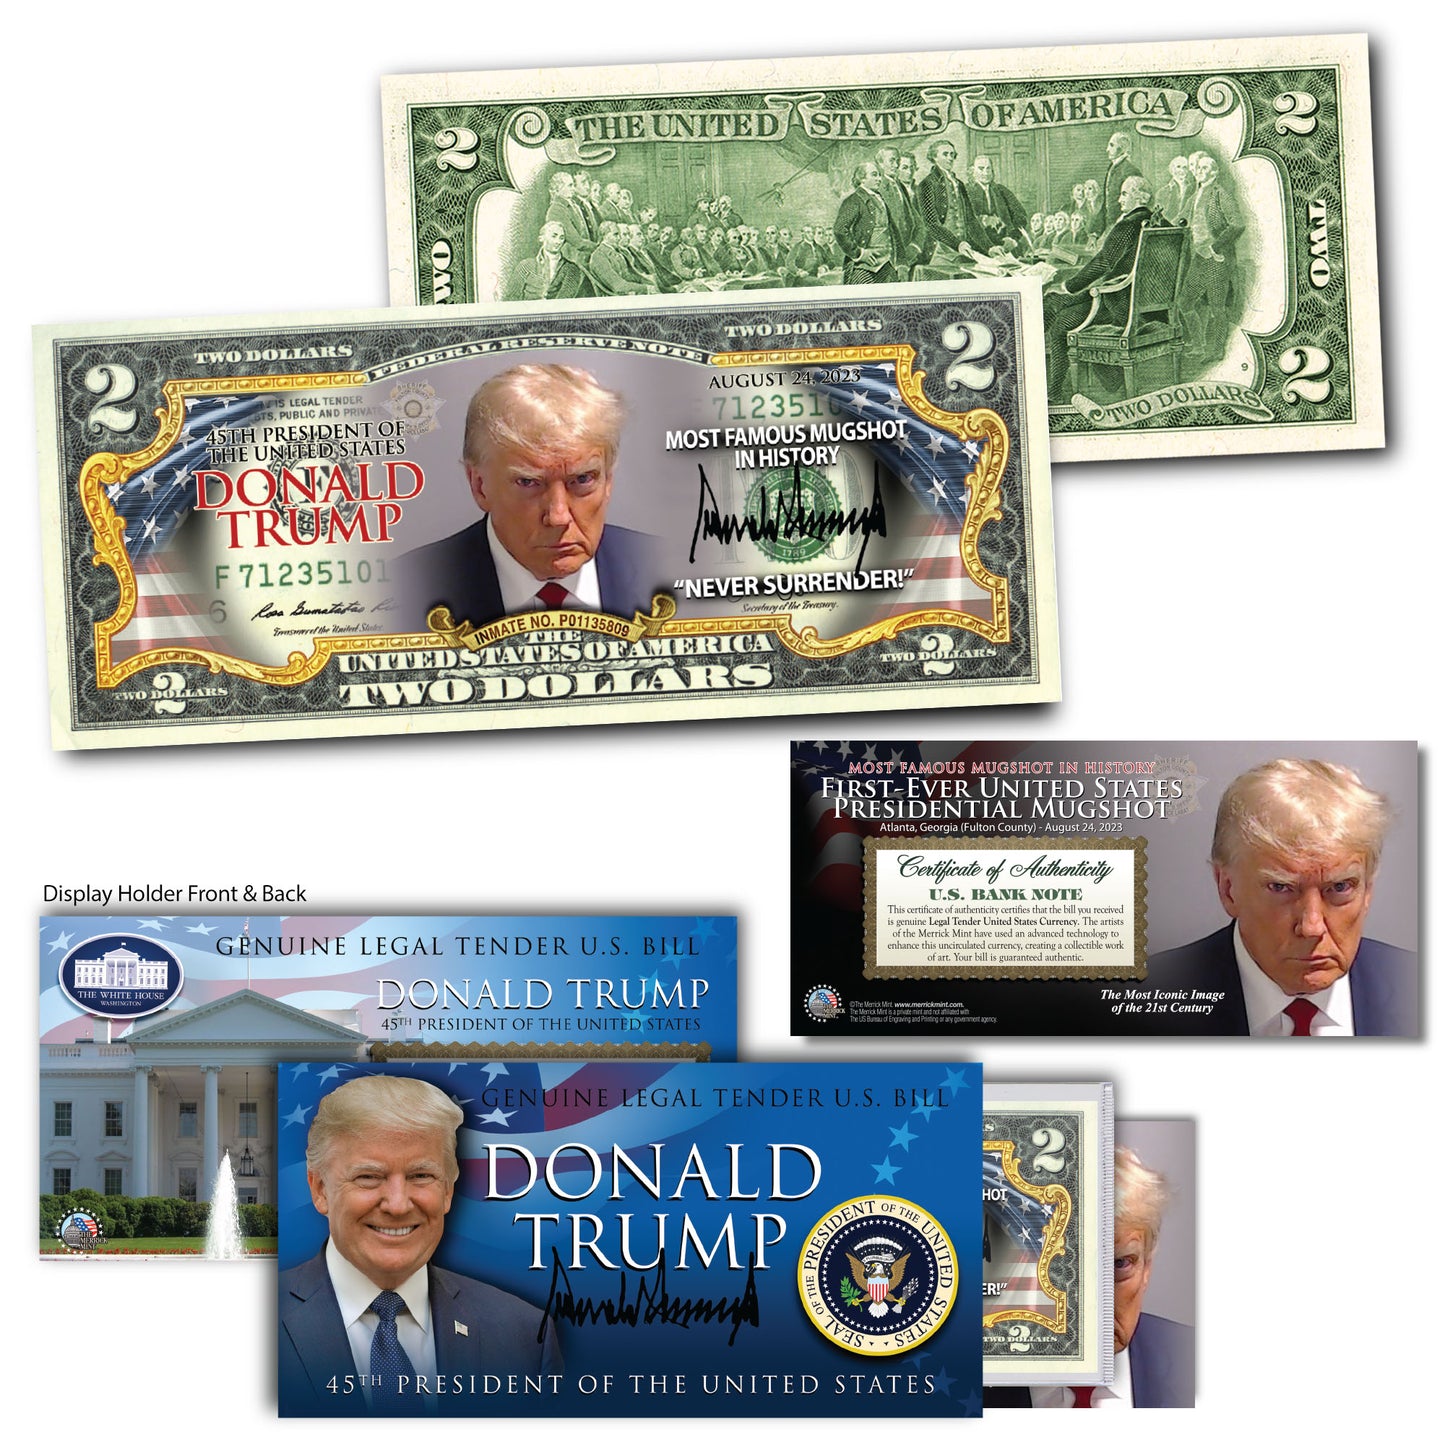 Trump Mugshot - Genuine Legal Tender U.S. $2 Bill